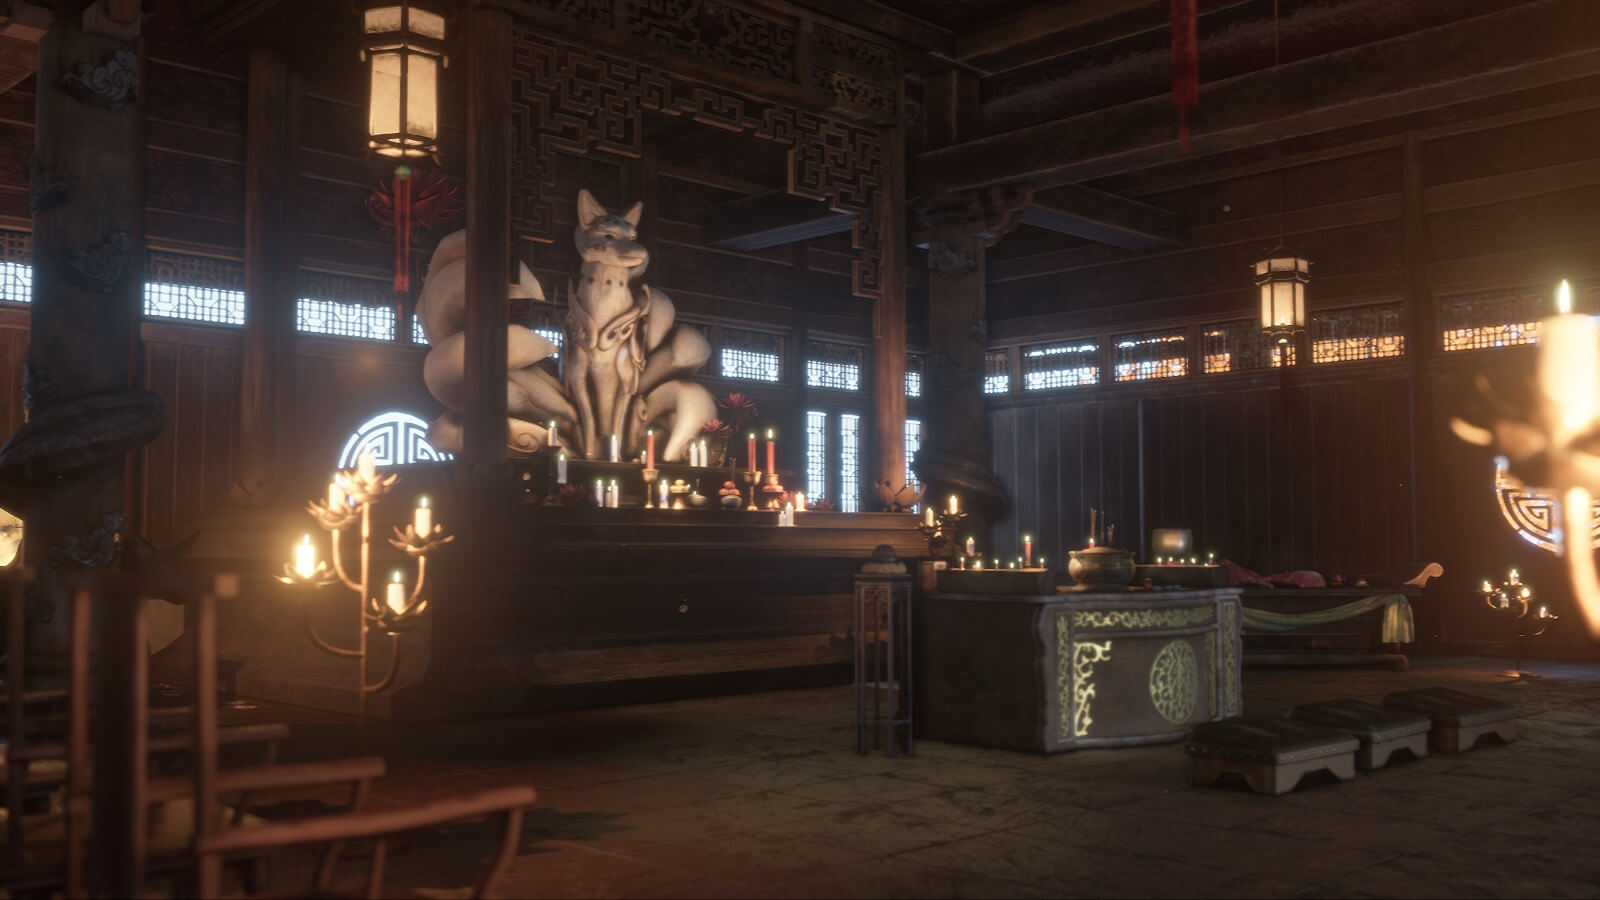 Fox statue in a temple interior